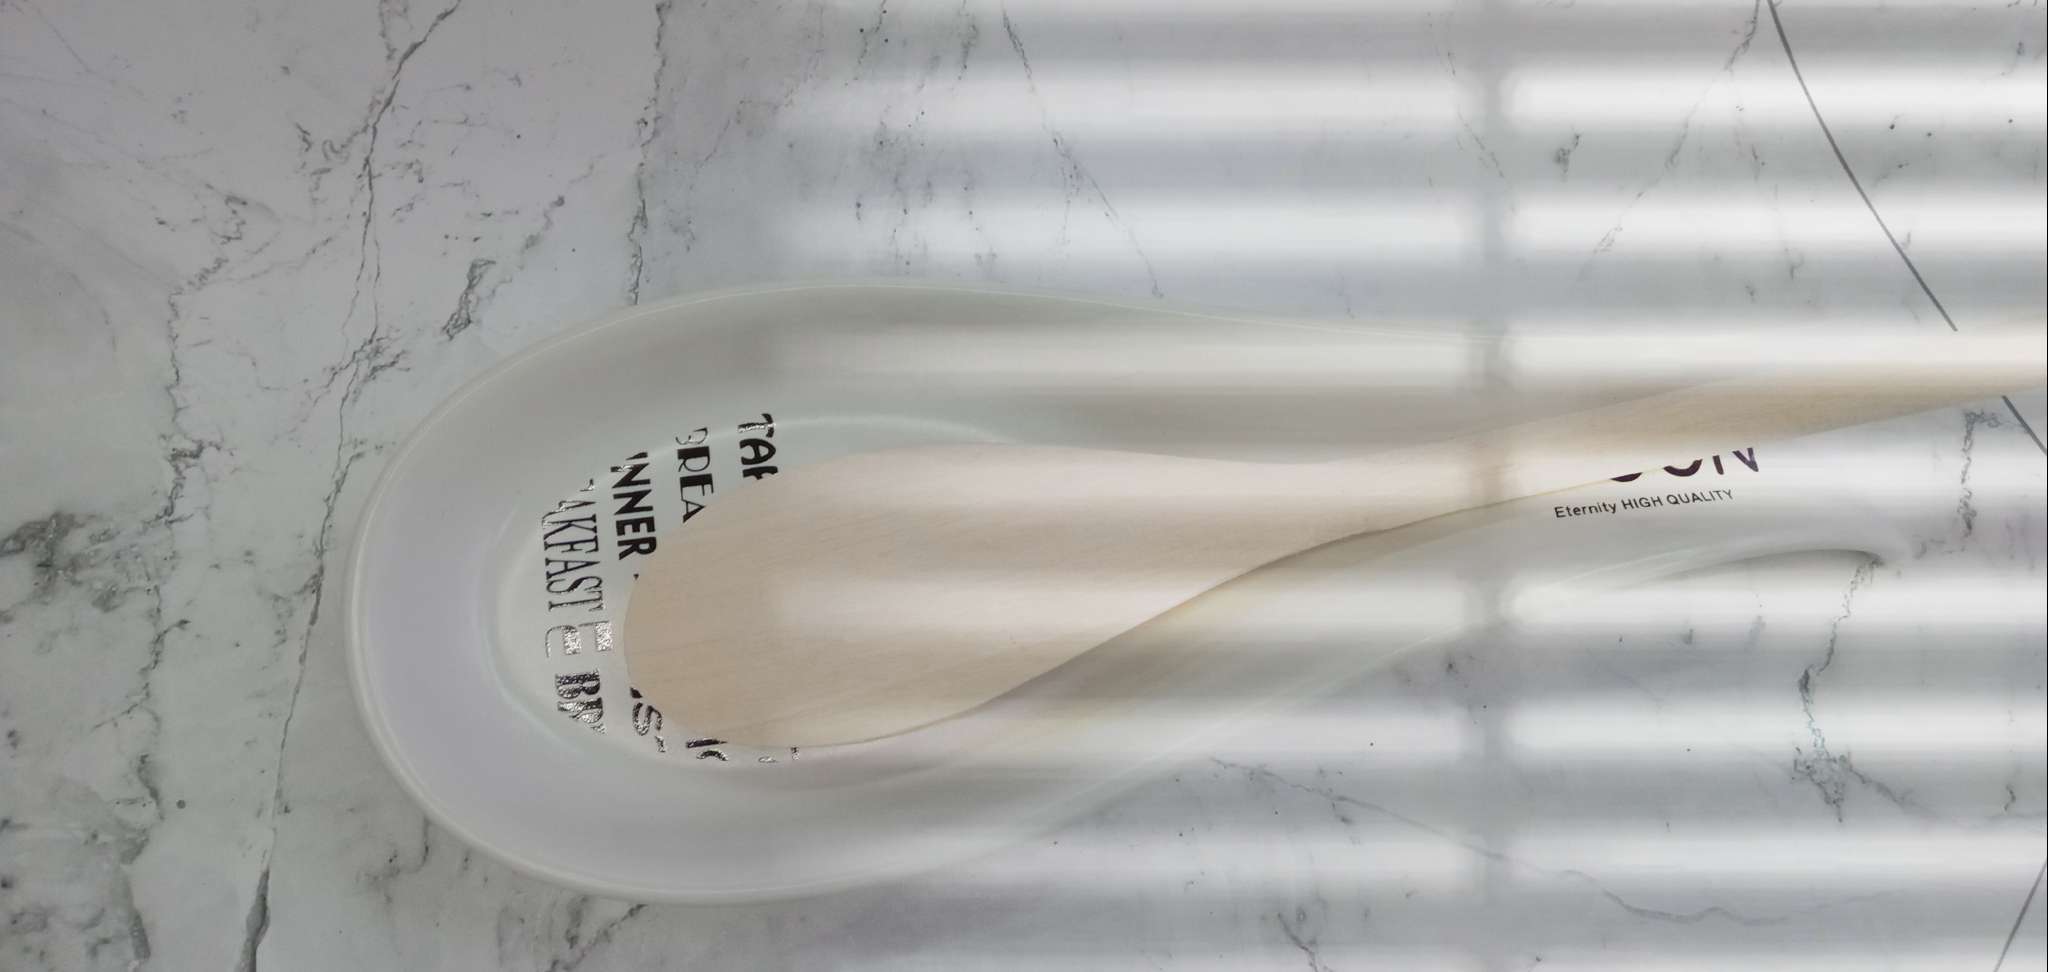 Spoon holder 抹茶绿刀叉陶瓷勺垫 厨房用厨具锅铲垫产品图